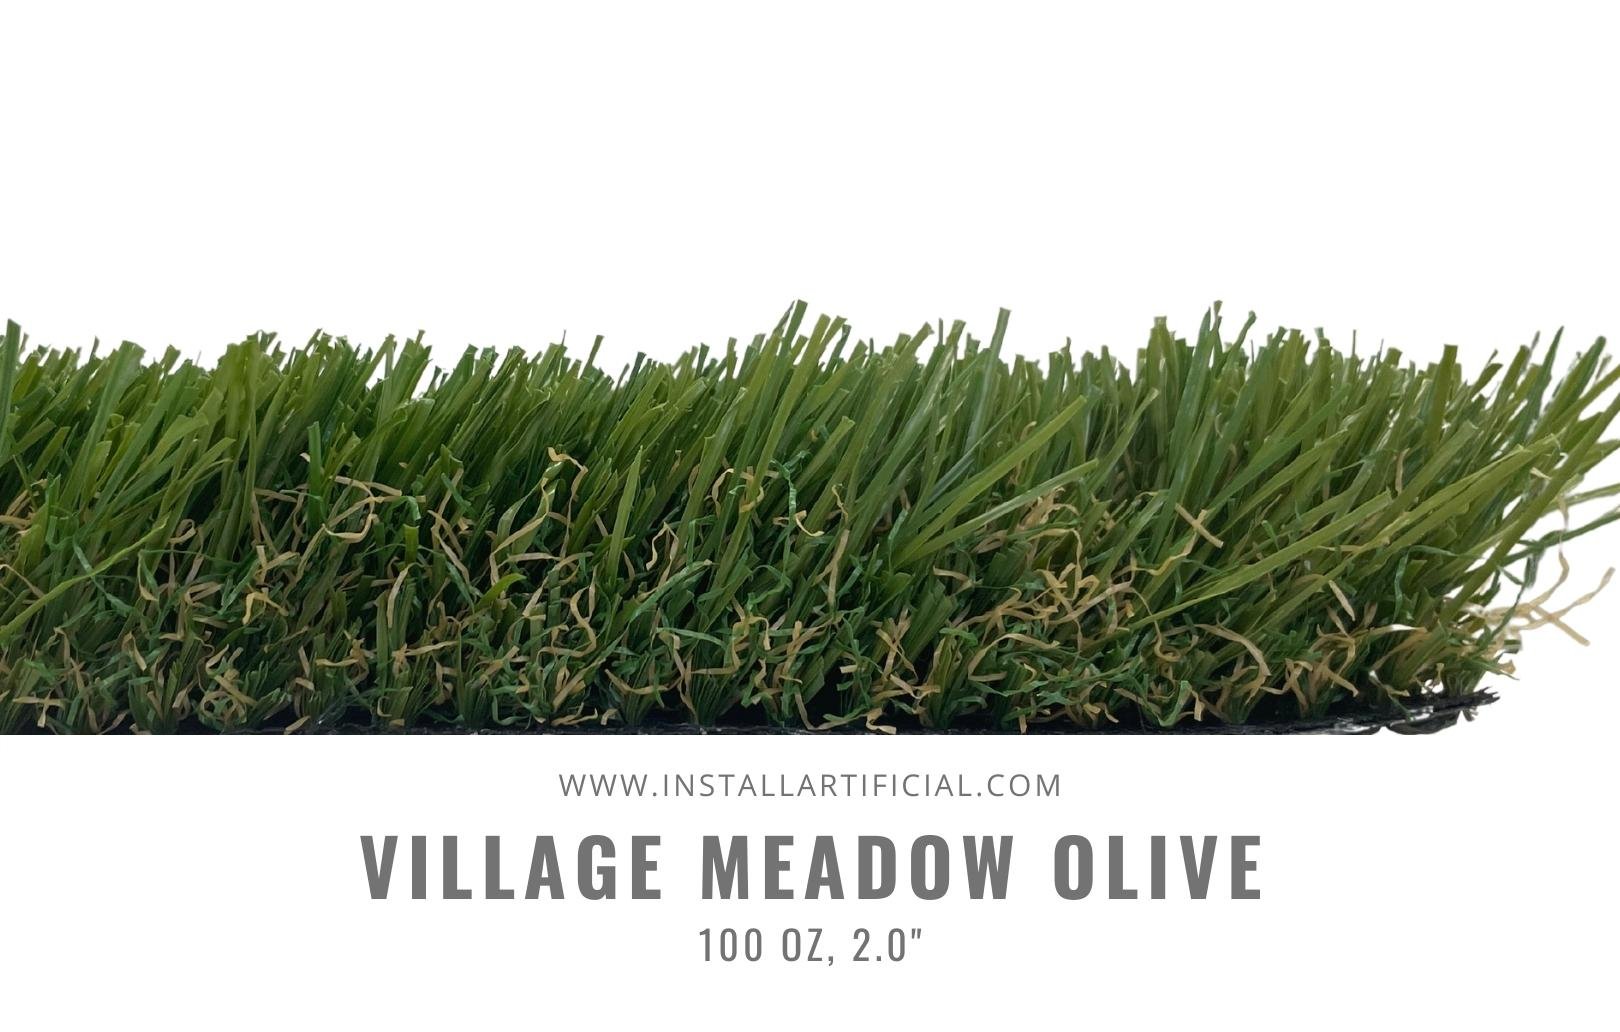 Village Meadow Olive, Shawgrass, side